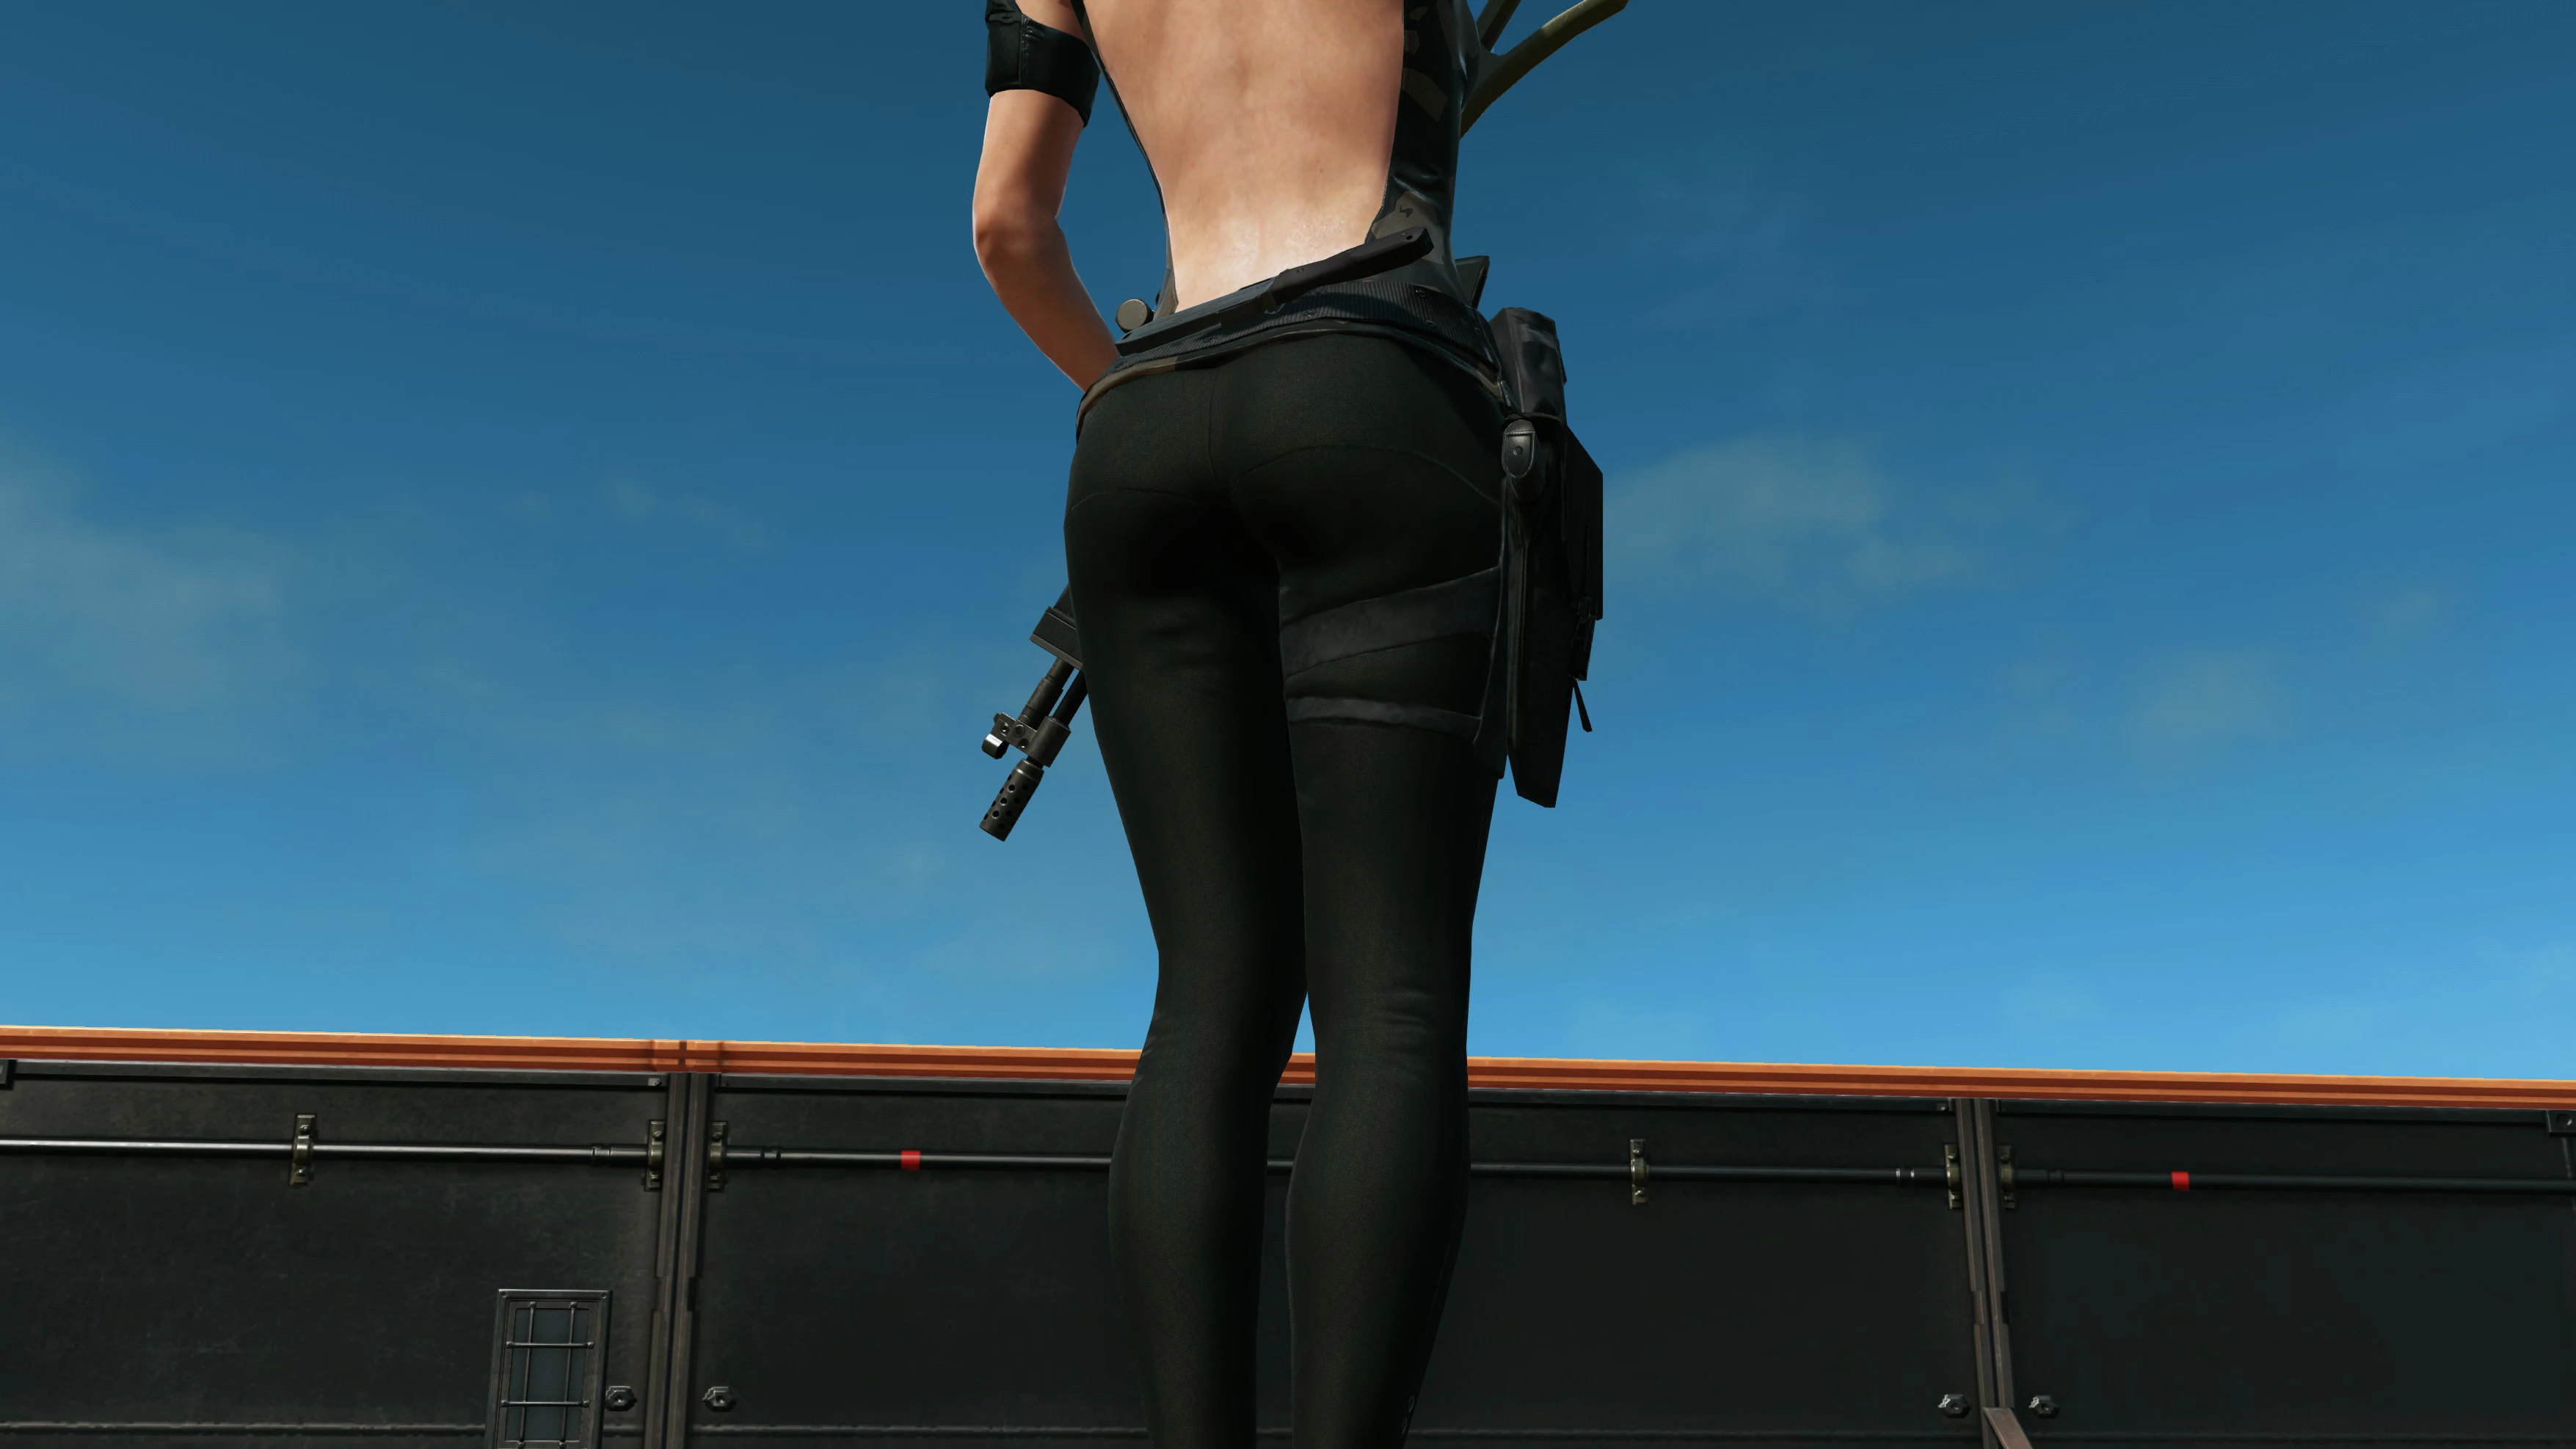 Female Megalodon Swimsuit Revamp at Metal Gear Solid V: The Phantom